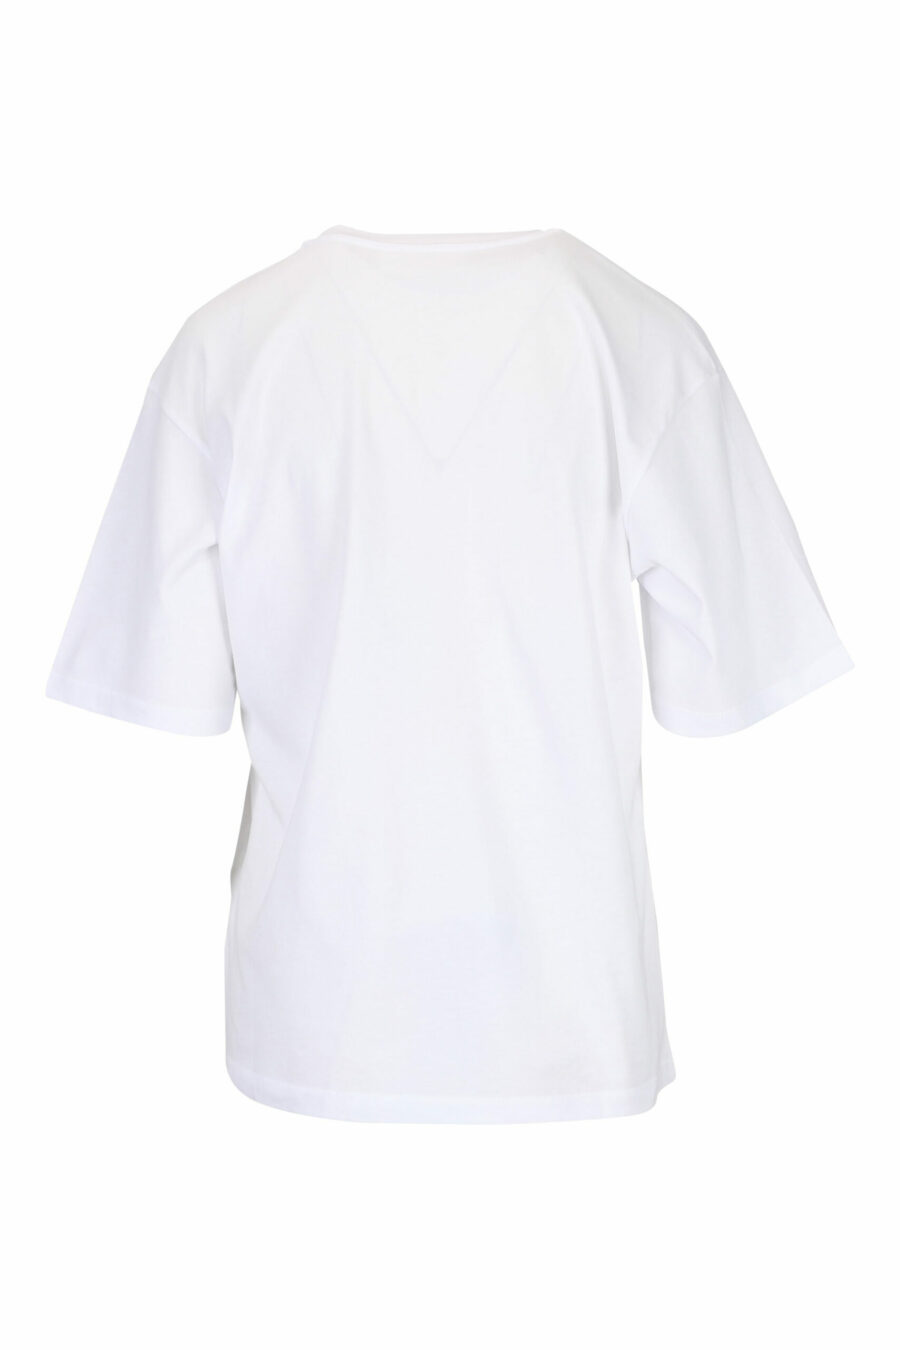 T-shirt branca com estampado de corações - 29710541060133 1 scaled